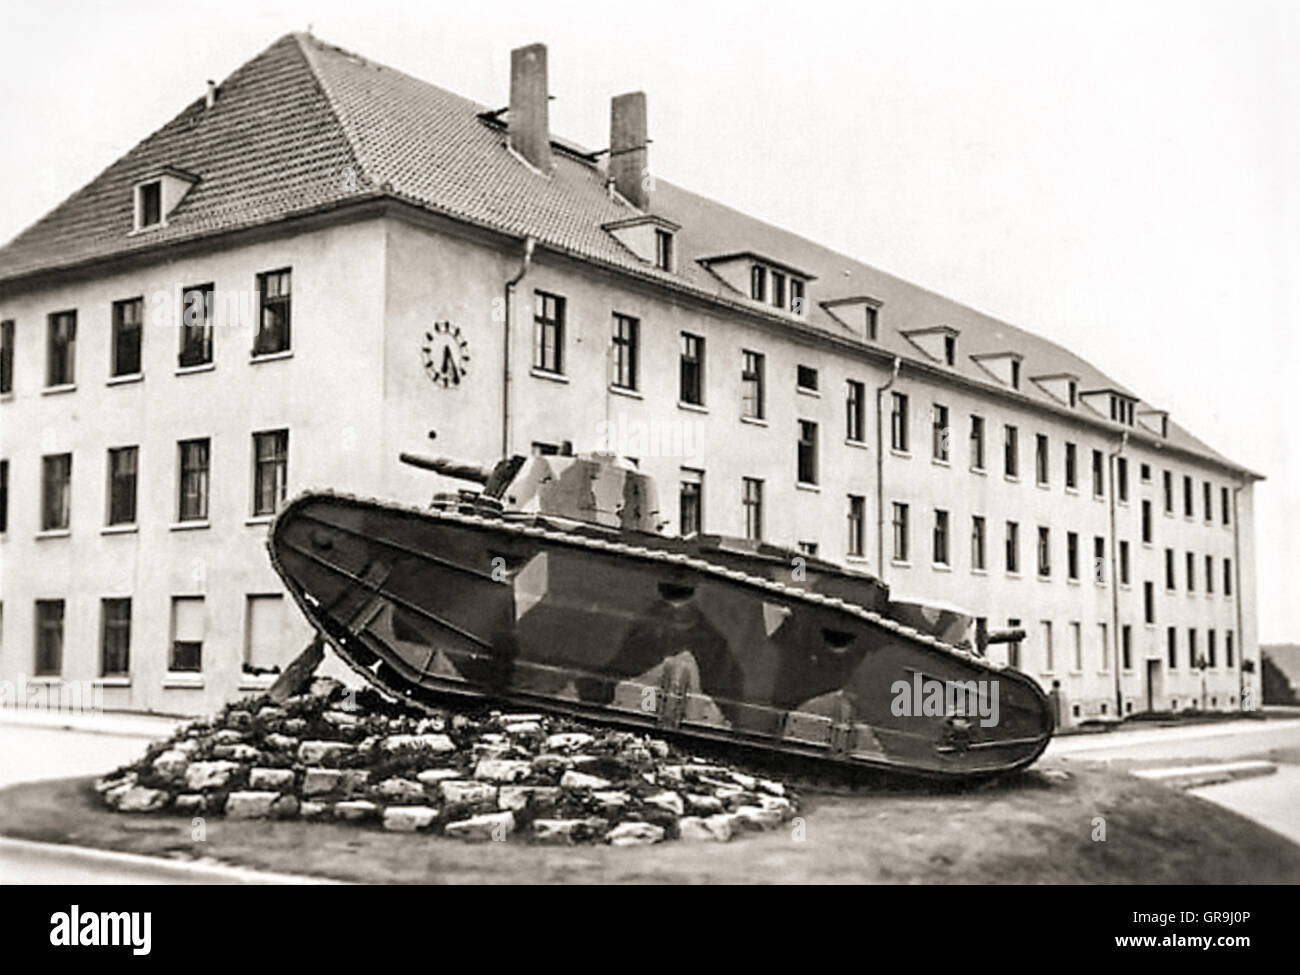 Depósito de entreguerras Grosstraktor alemán "1"producida en contravención del Tratado de Versalles. Fotografía de único sobreviviente prototipo desarrollado por Daimler-Benz consagrado como un monumento por fuera de la 1ª División Panzer cuarteles en Erfurt adoptado circa 1940. Foto de stock